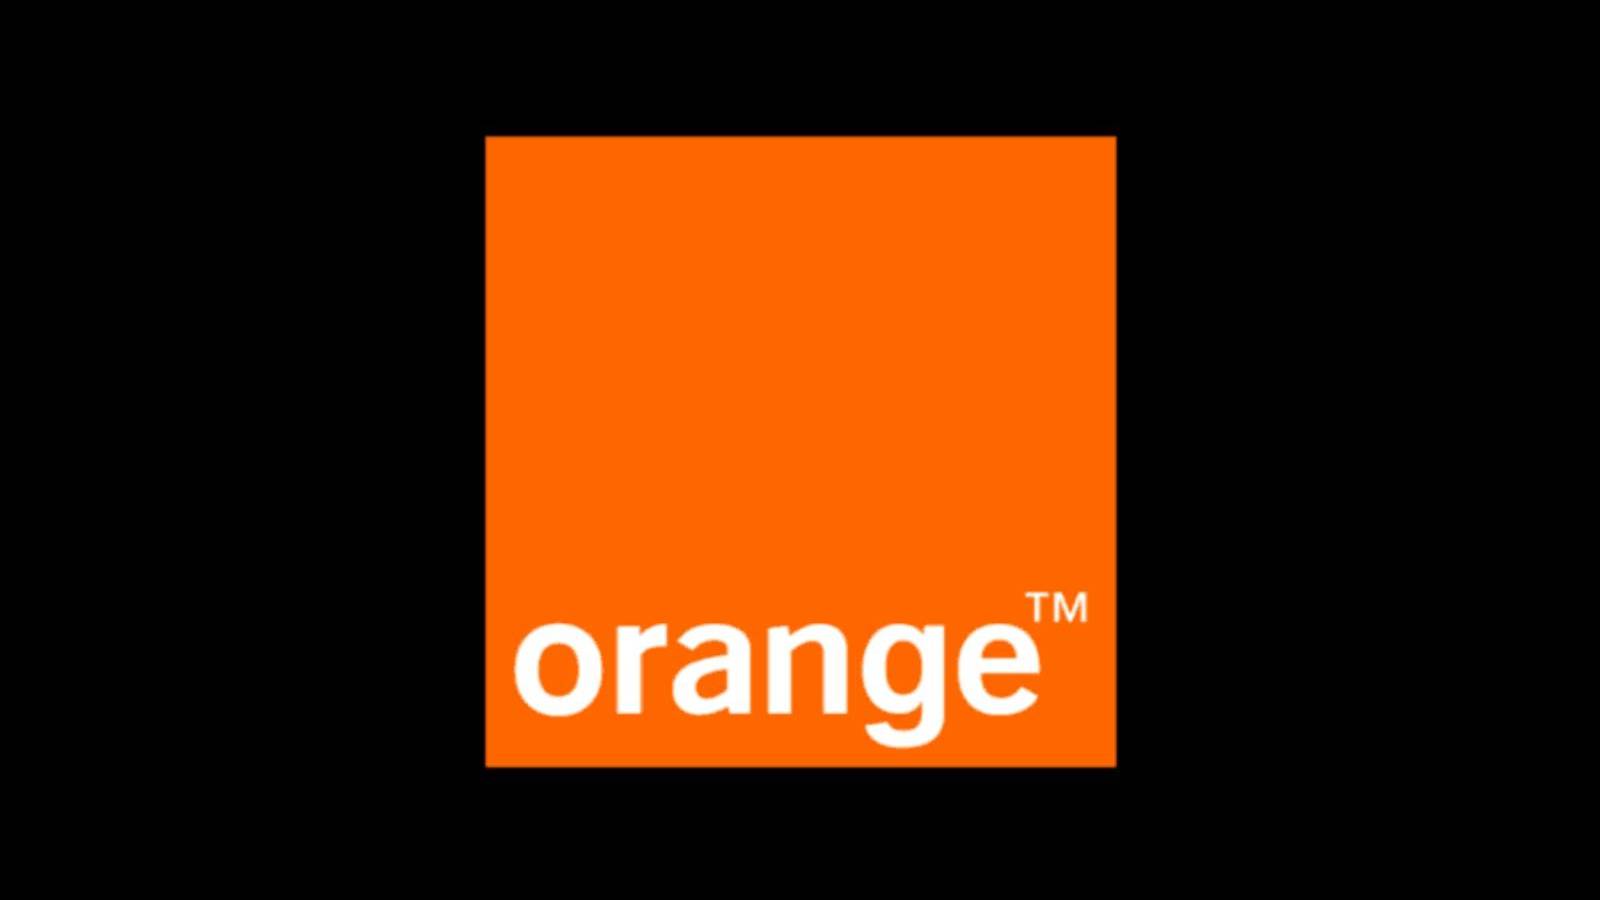 Oficjalny komunikat Orange, ile pieniędzy BEZPŁATNIE rozdaje rumuńskim klientom